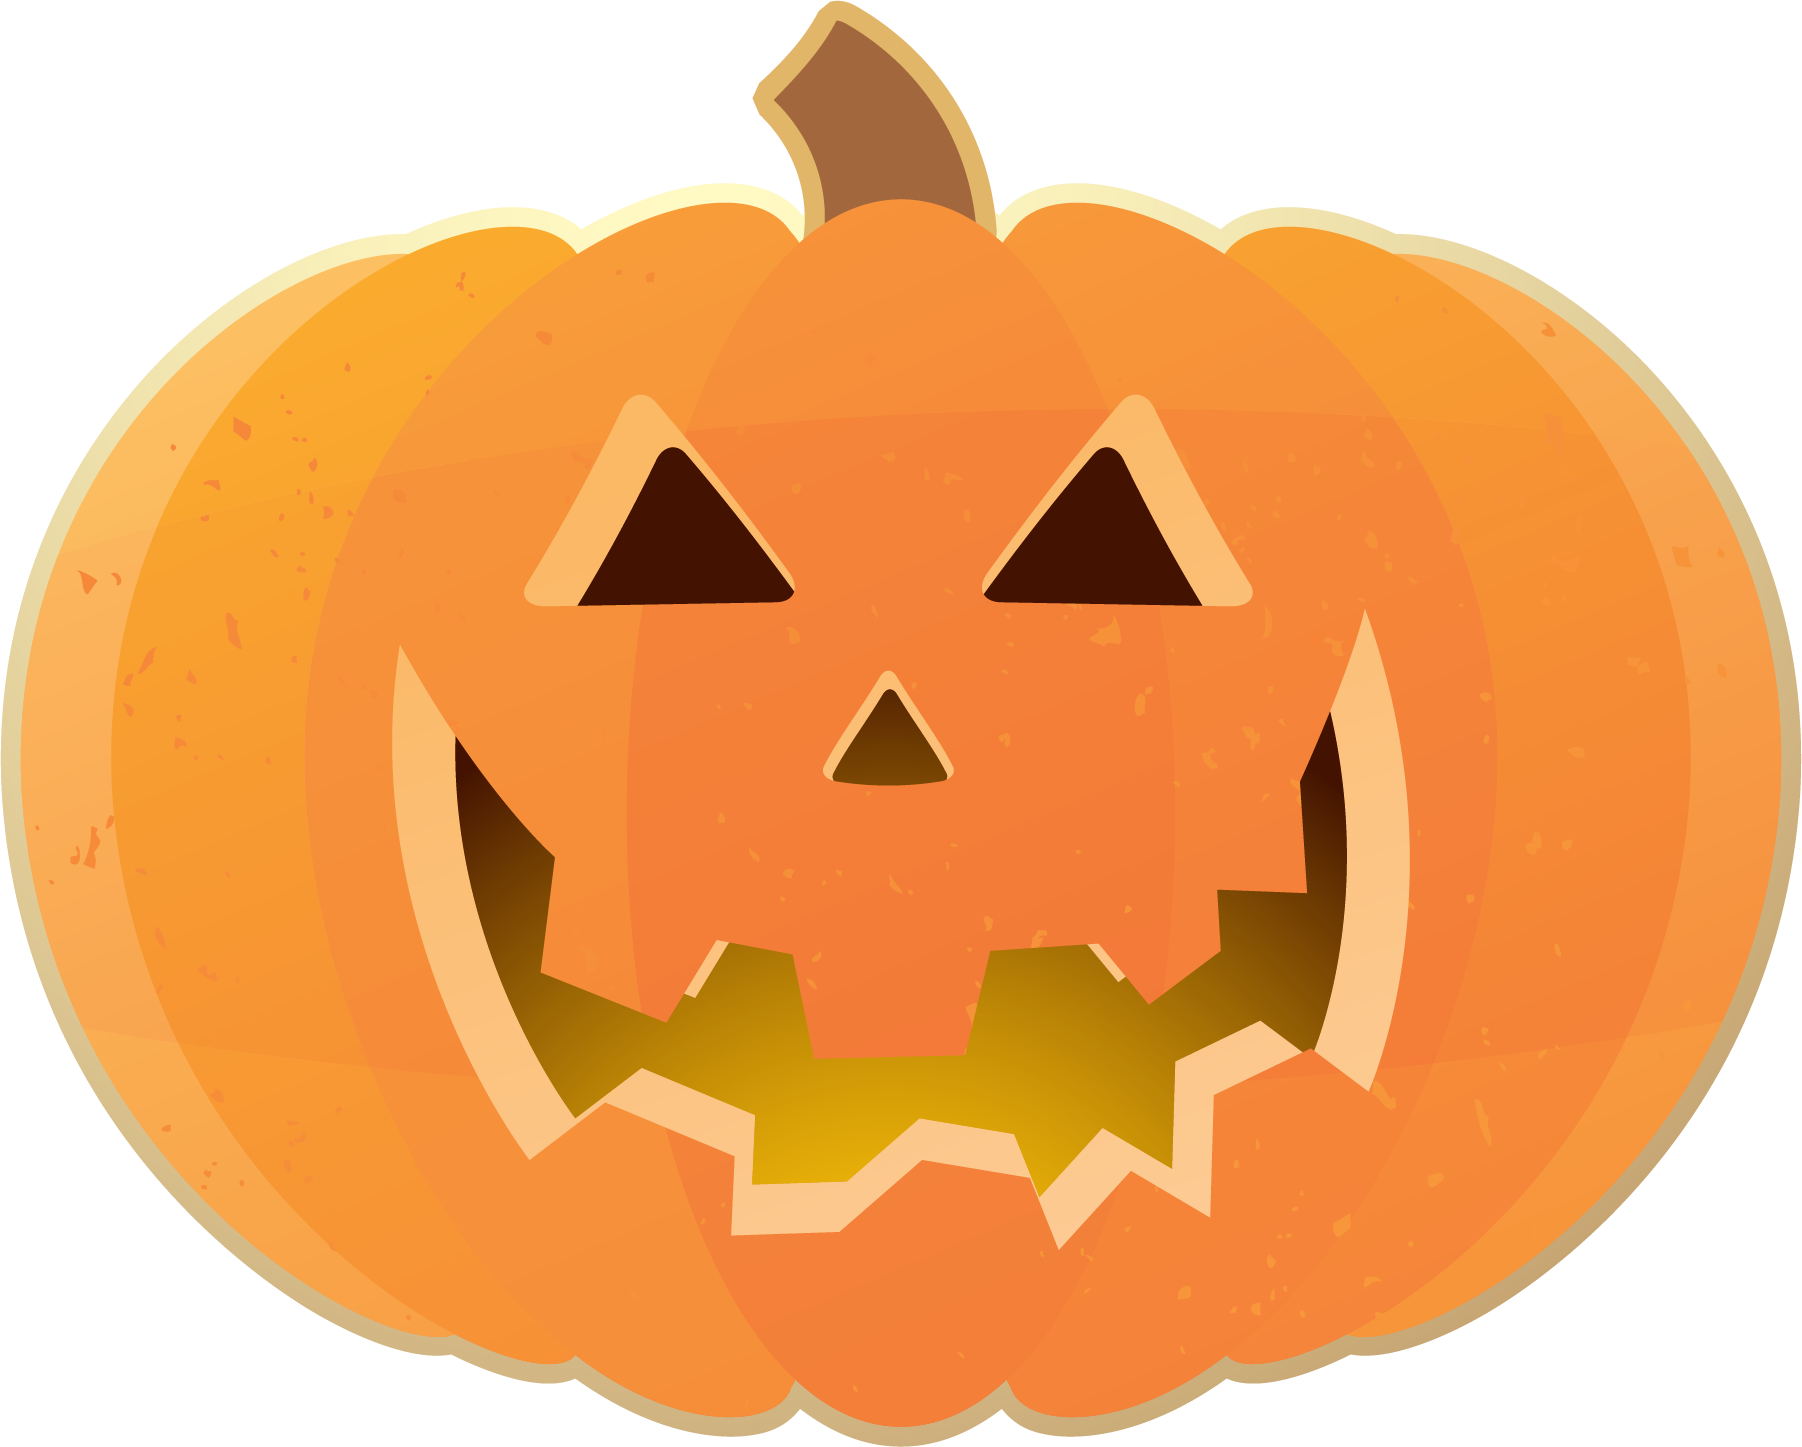 Carved Pumpkin PNG Image Background